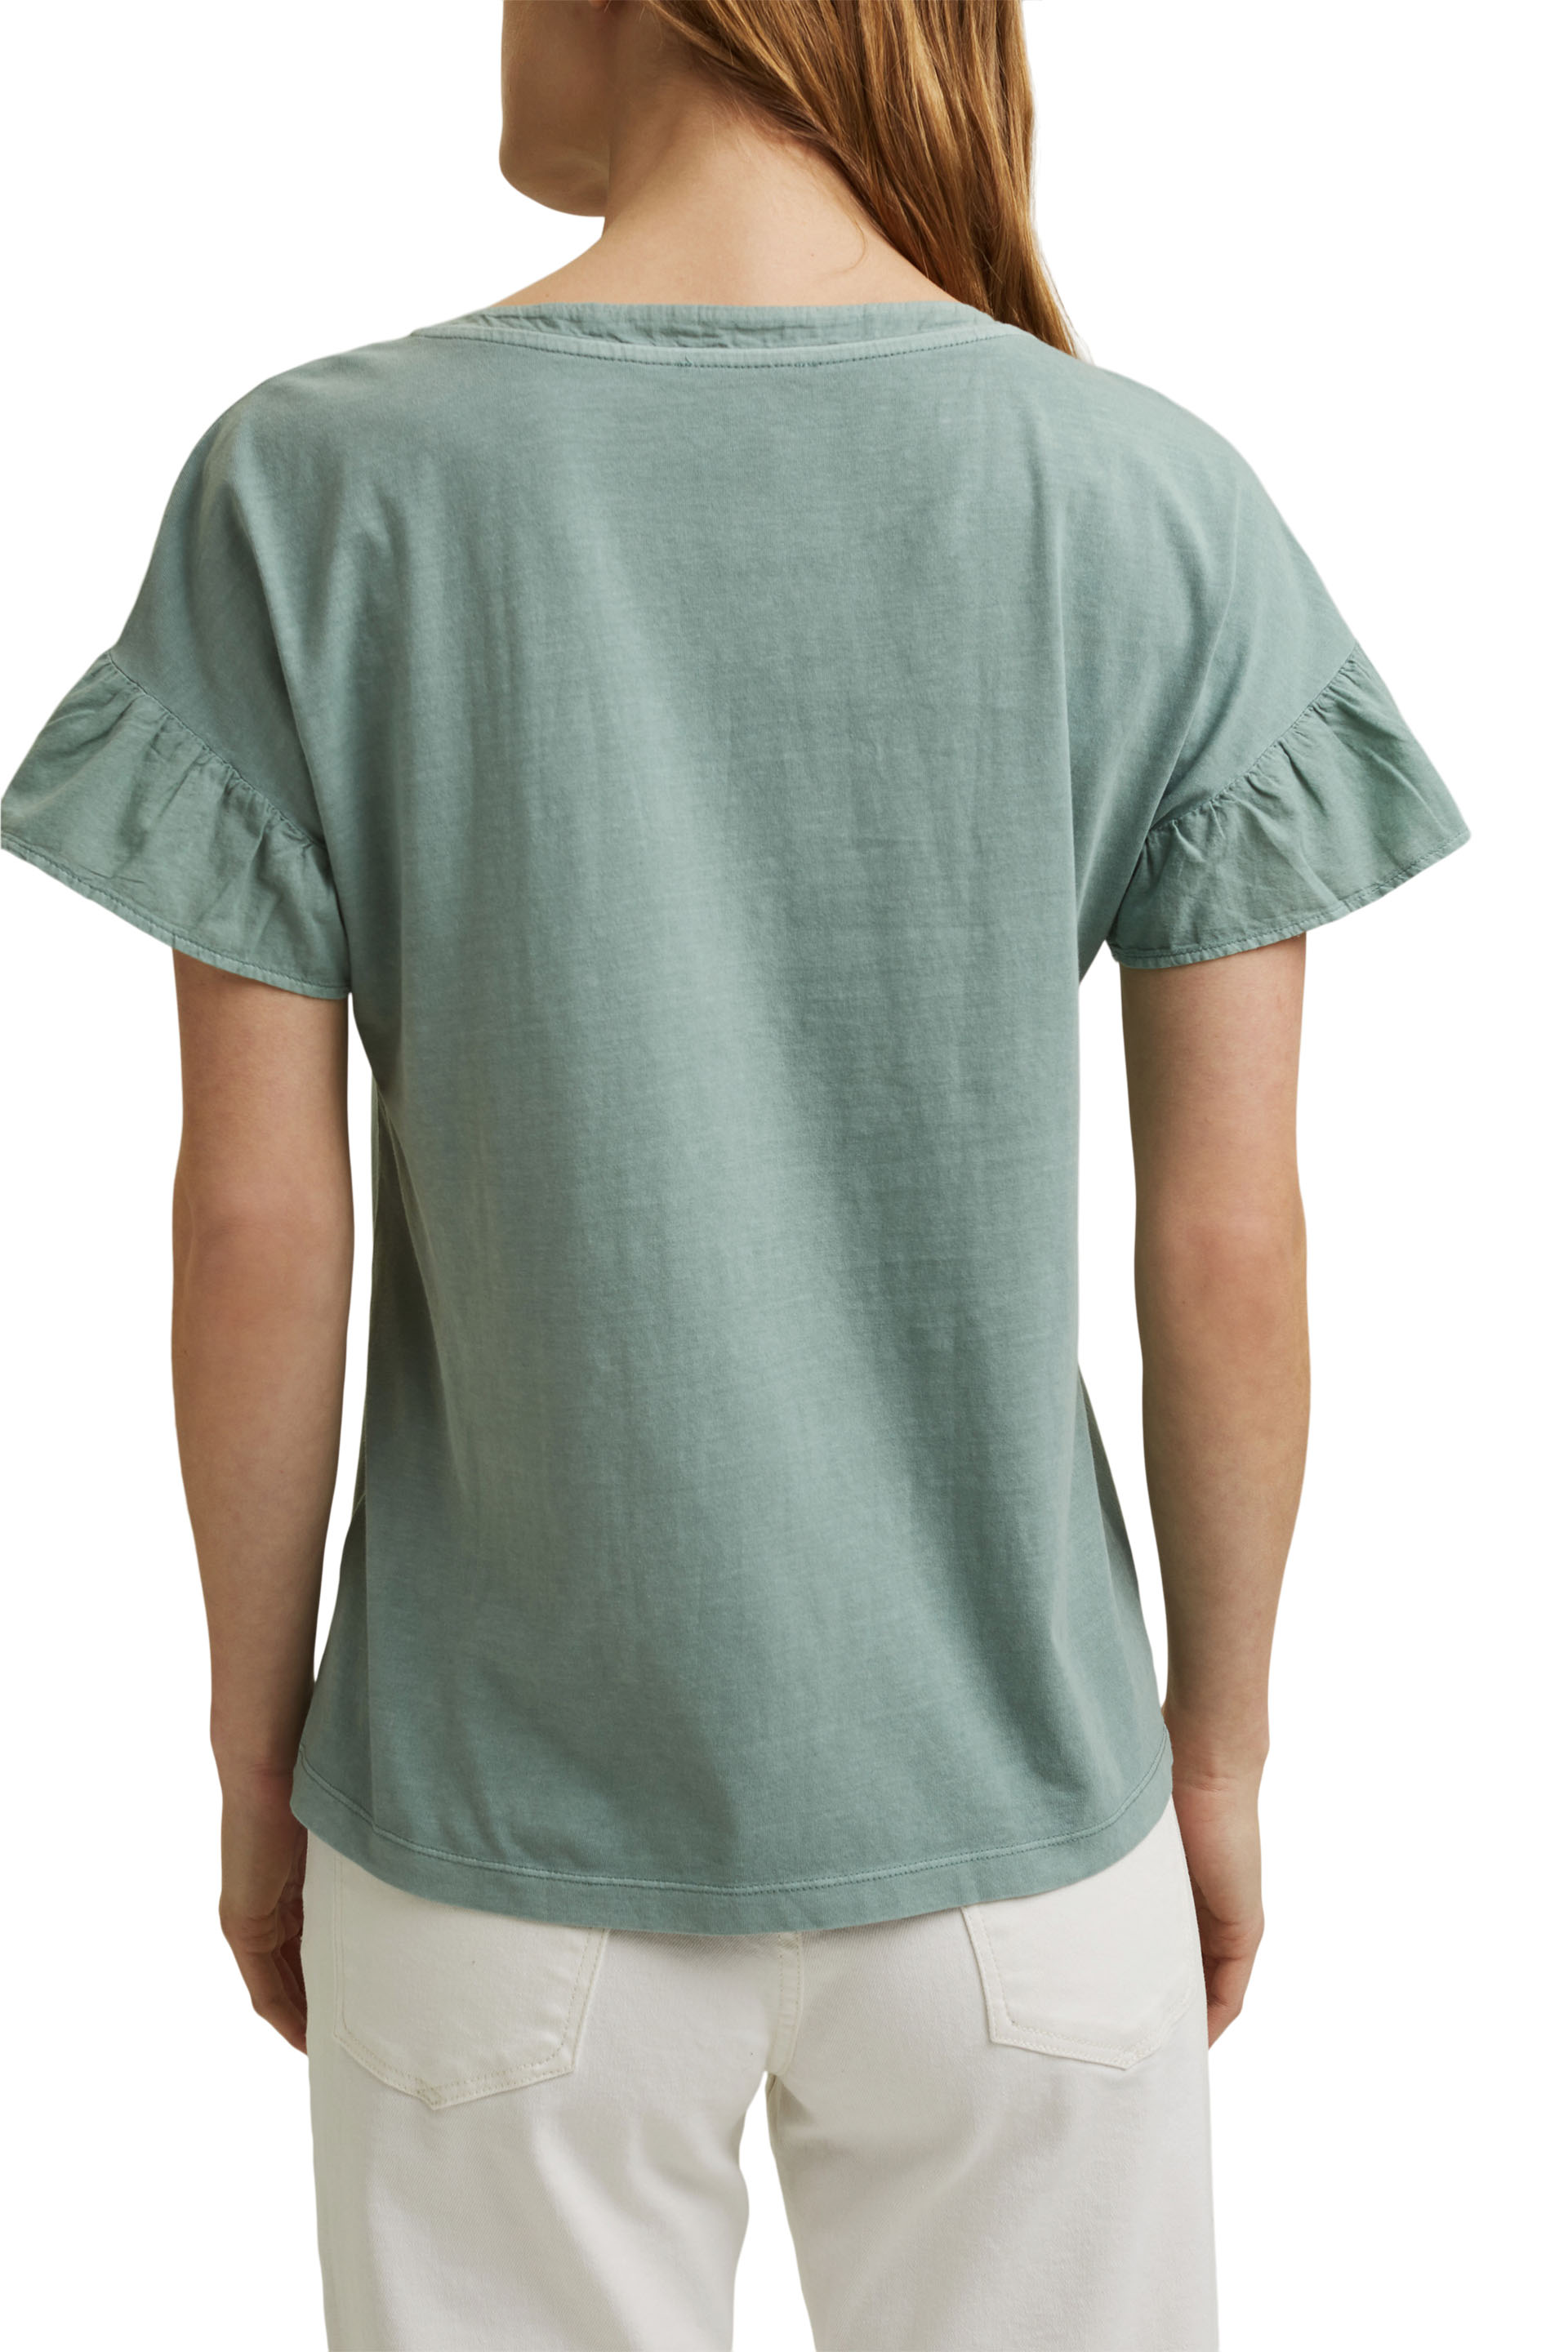 T-Shirt mit Volant-Ärmeln, Organic Cotton